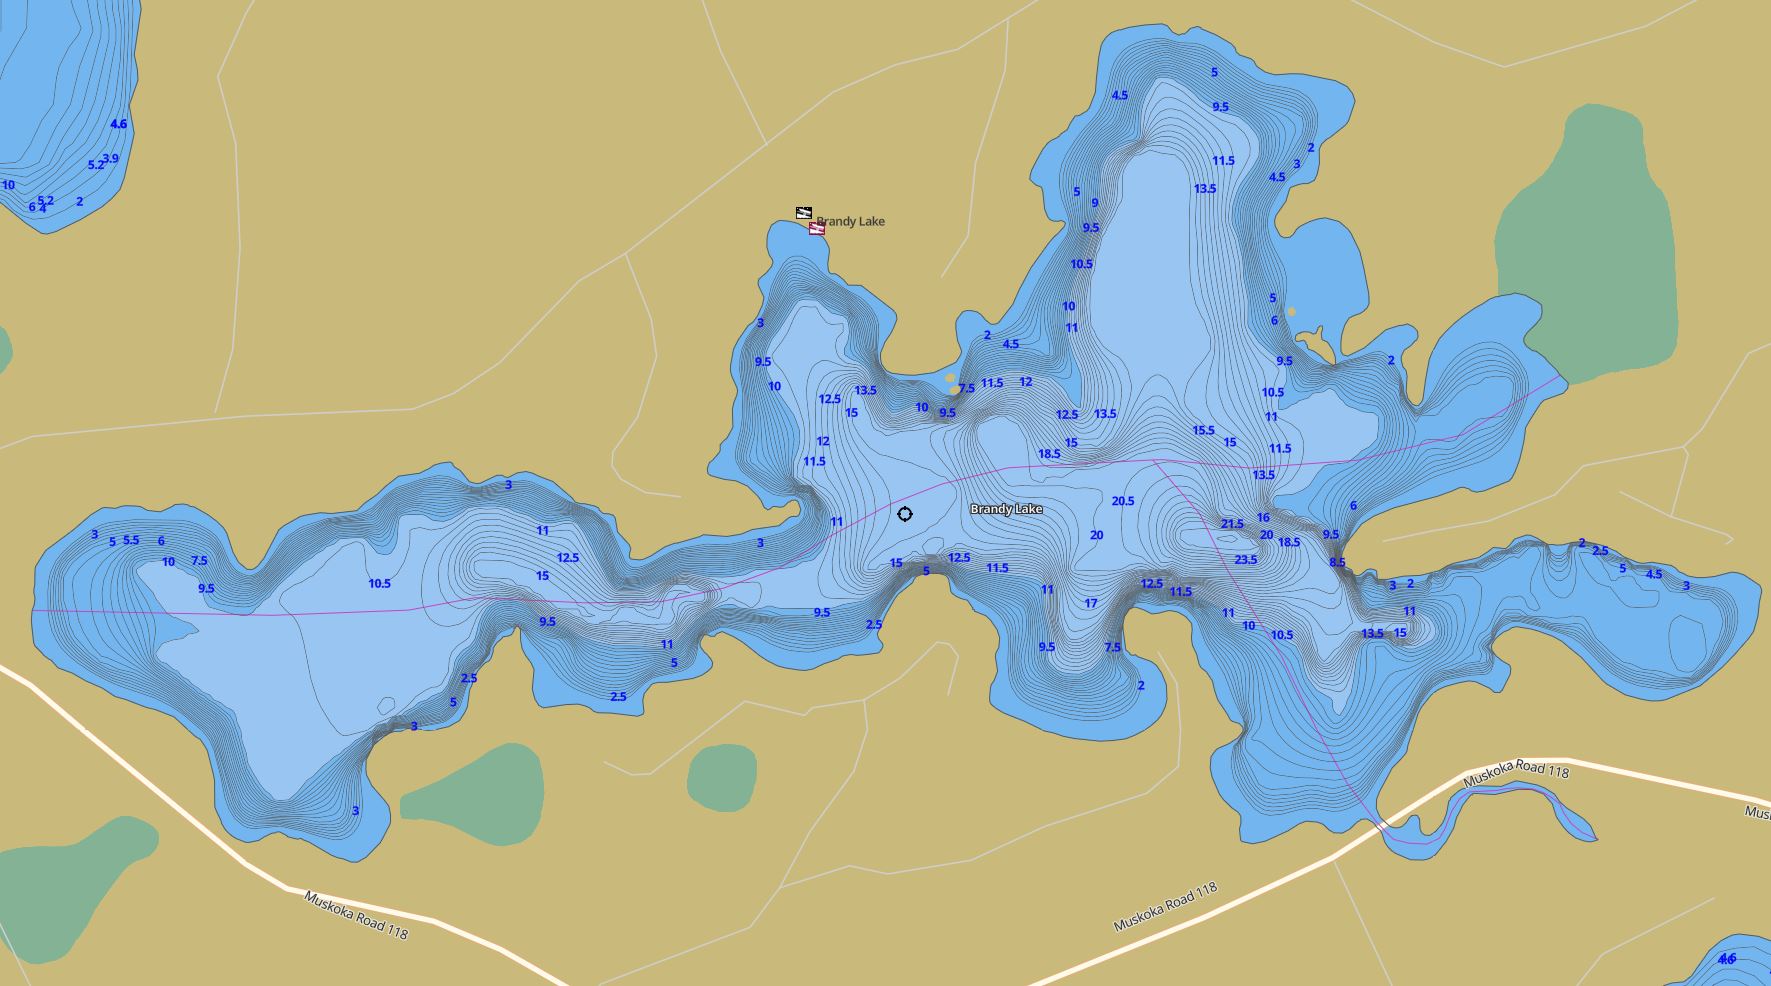 Contour Map of Brandy Lake in Municipality of Muskoka Lakes and the District of Muskoka